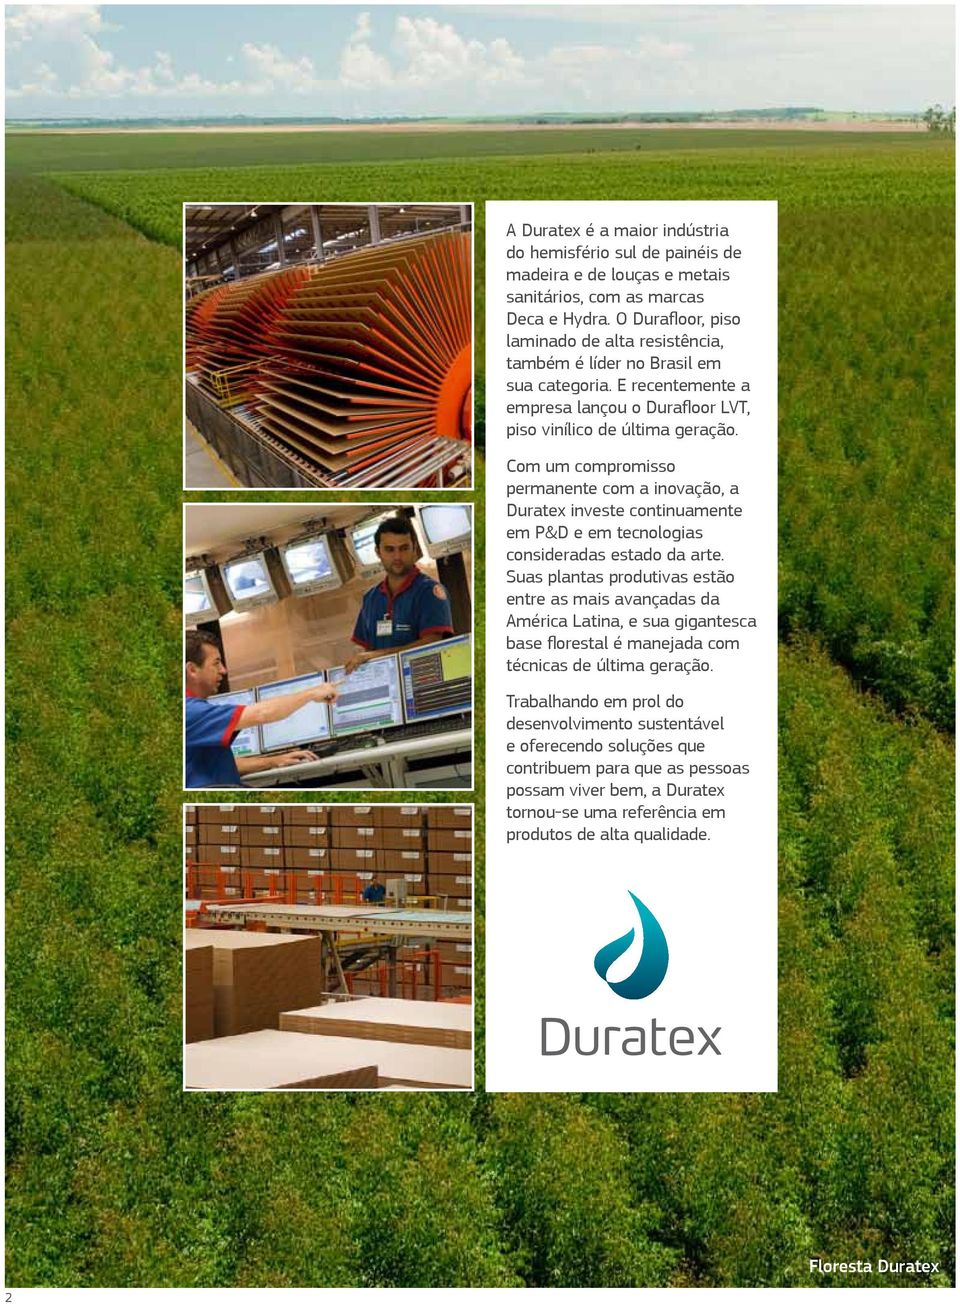 Com um compromisso permanente com a inovação, a Duratex investe continuamente em P&D e em tecnologias consideradas estado da arte.